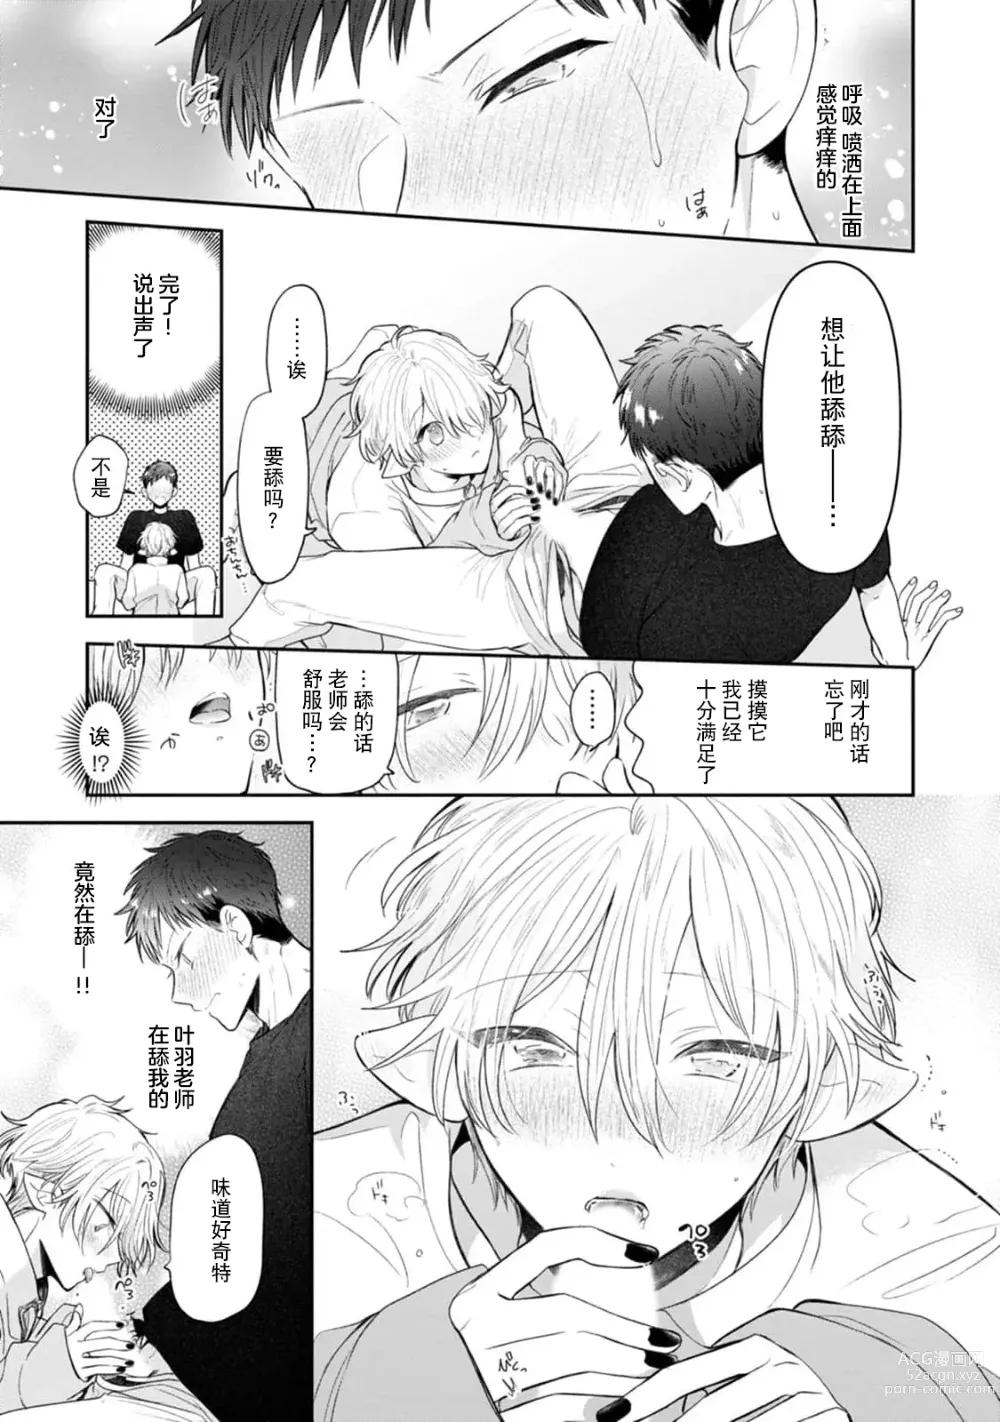 Page 145 of manga 叶羽老师全部是第一次 1-4